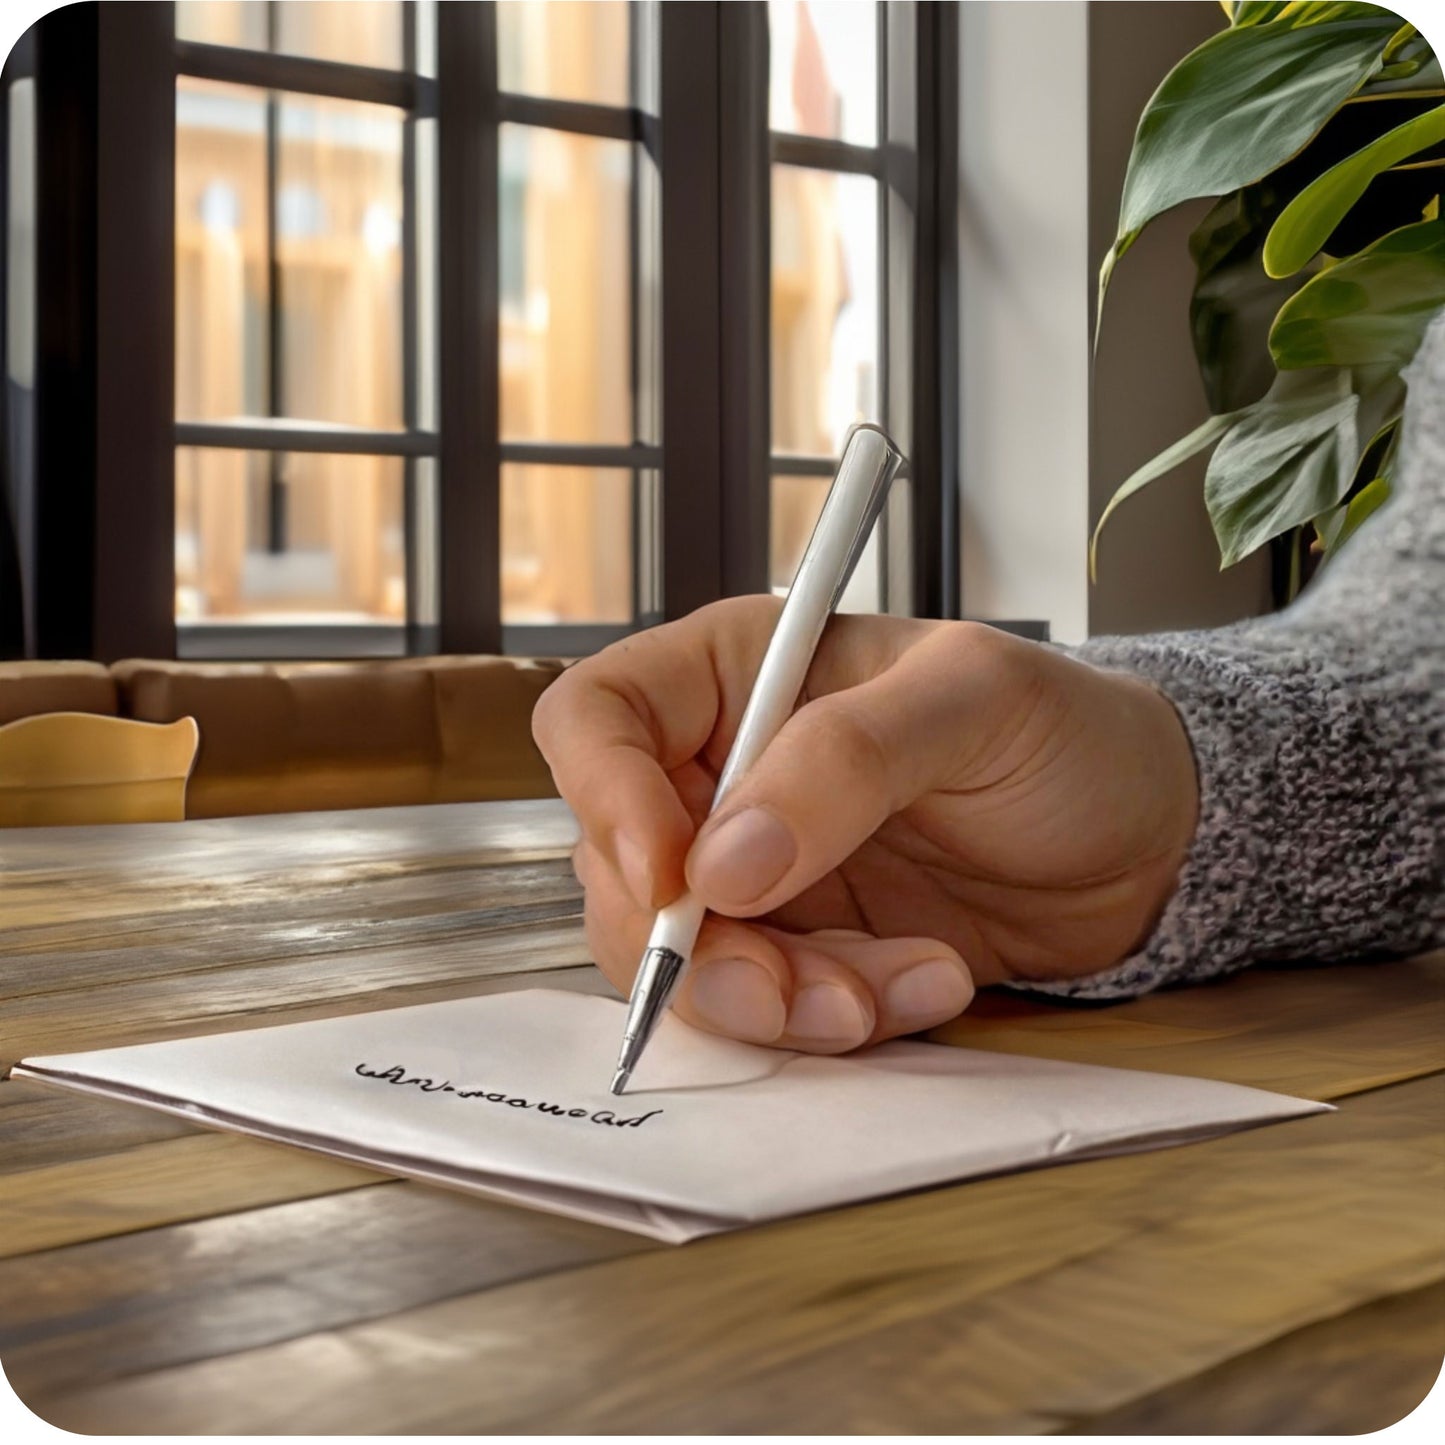 Een afbeelding bij de productfoto waarin iemand een wenskaart aan het schrijven is aan een bureau, tafel in een specifieke en aangepaste sfeervolle omgeving zoals op kantoor